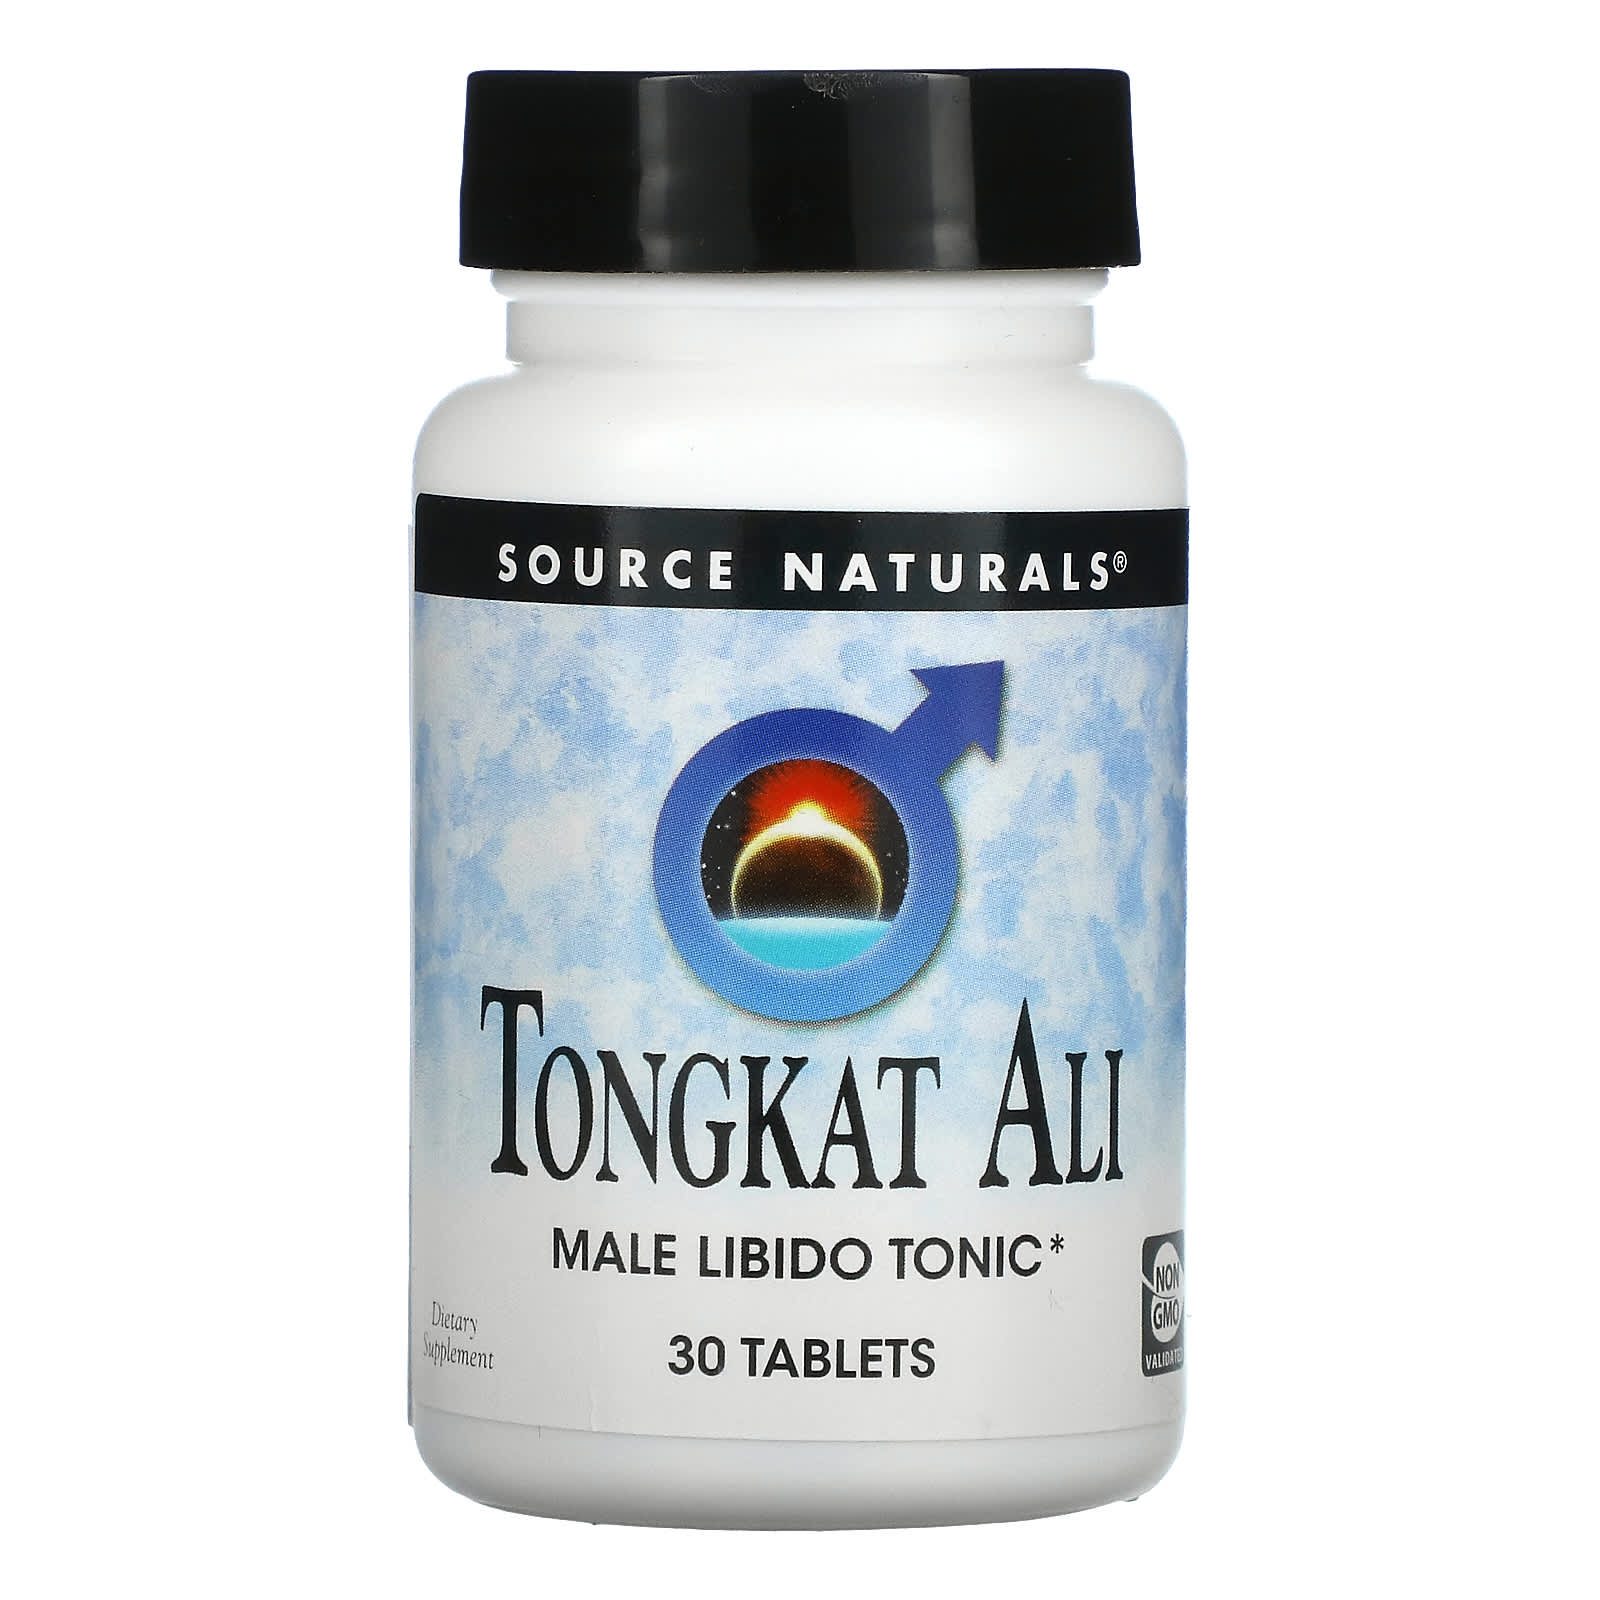 Тоник Source Naturals для мужского либидо, 30 таблеток цена и фото